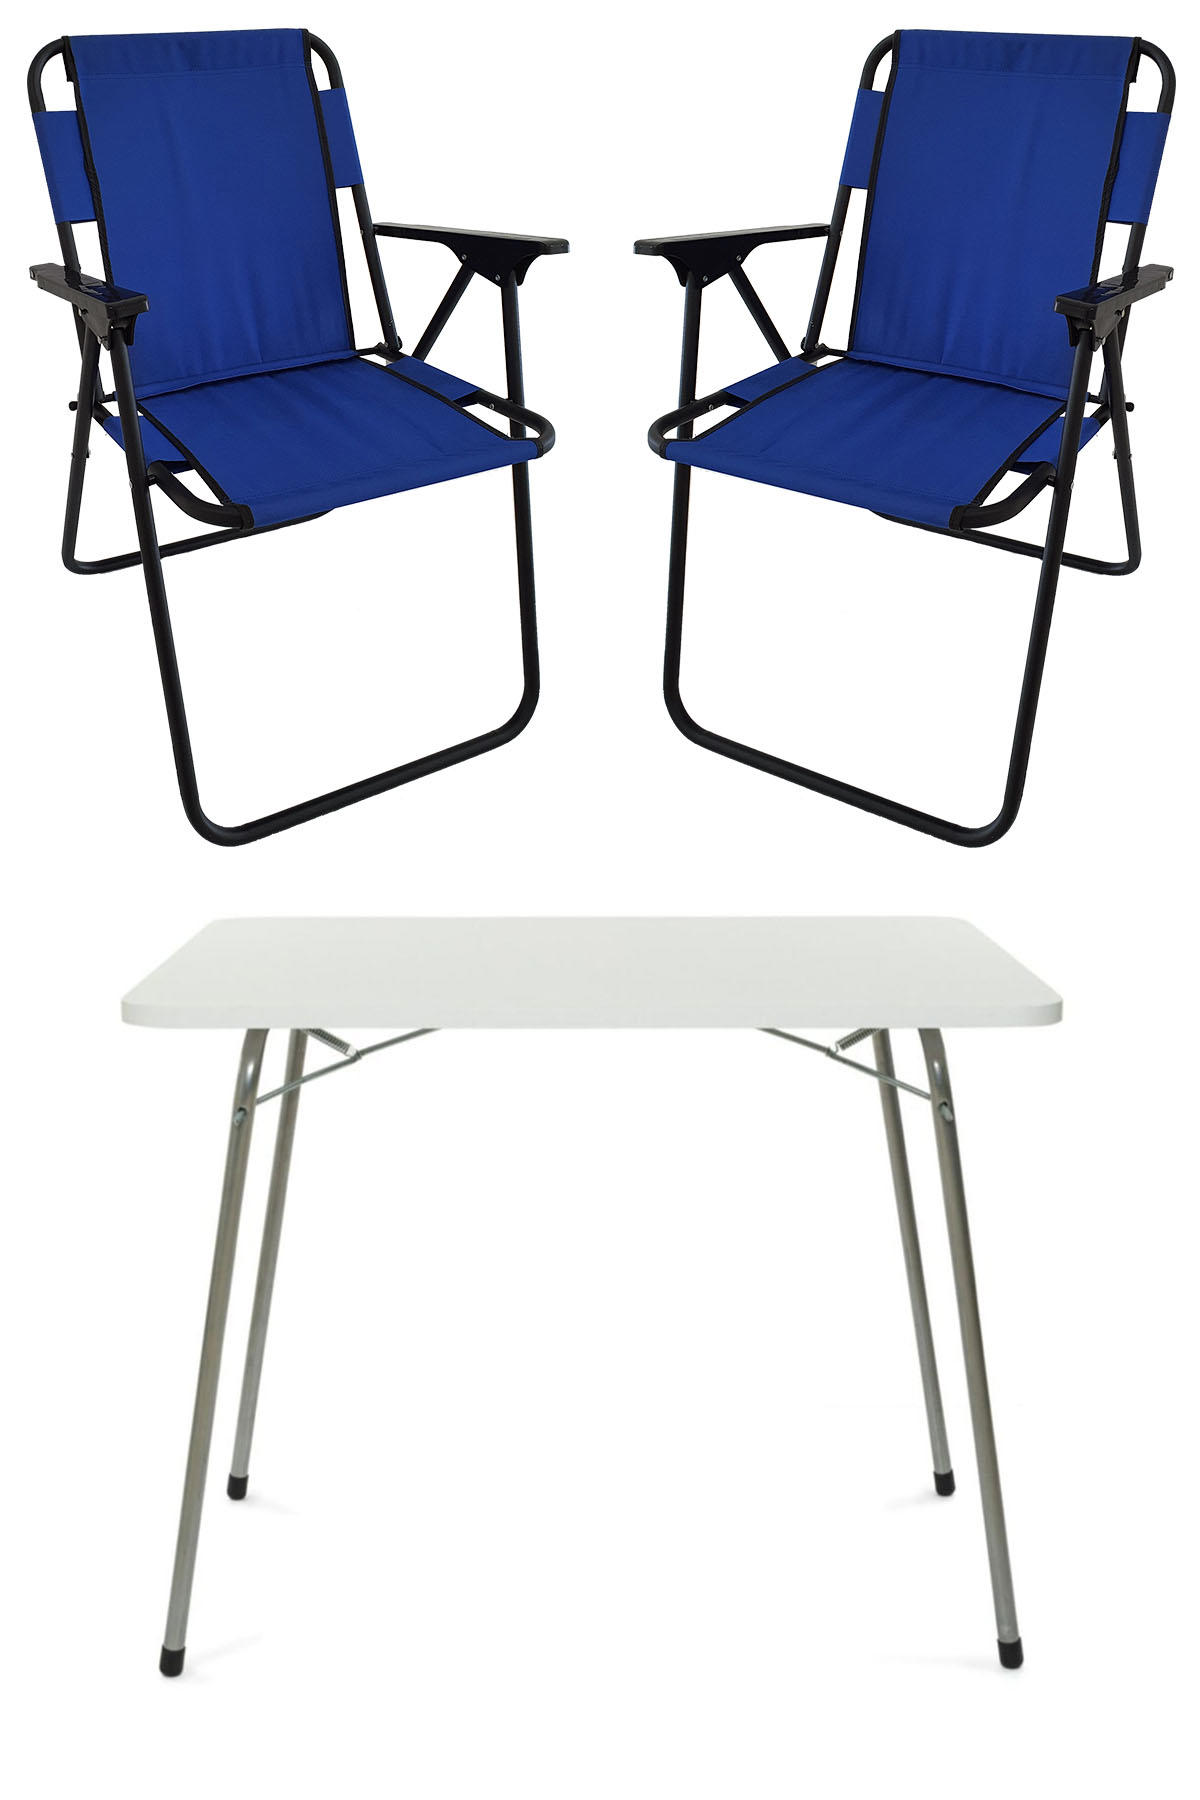 Bofigo 60 x 80 cm Tabureli Çantalı Dikdörtgen Granit Katlanır Kamp Masası Beyaz + 2 Adet Katlanır Sandalye Mavi